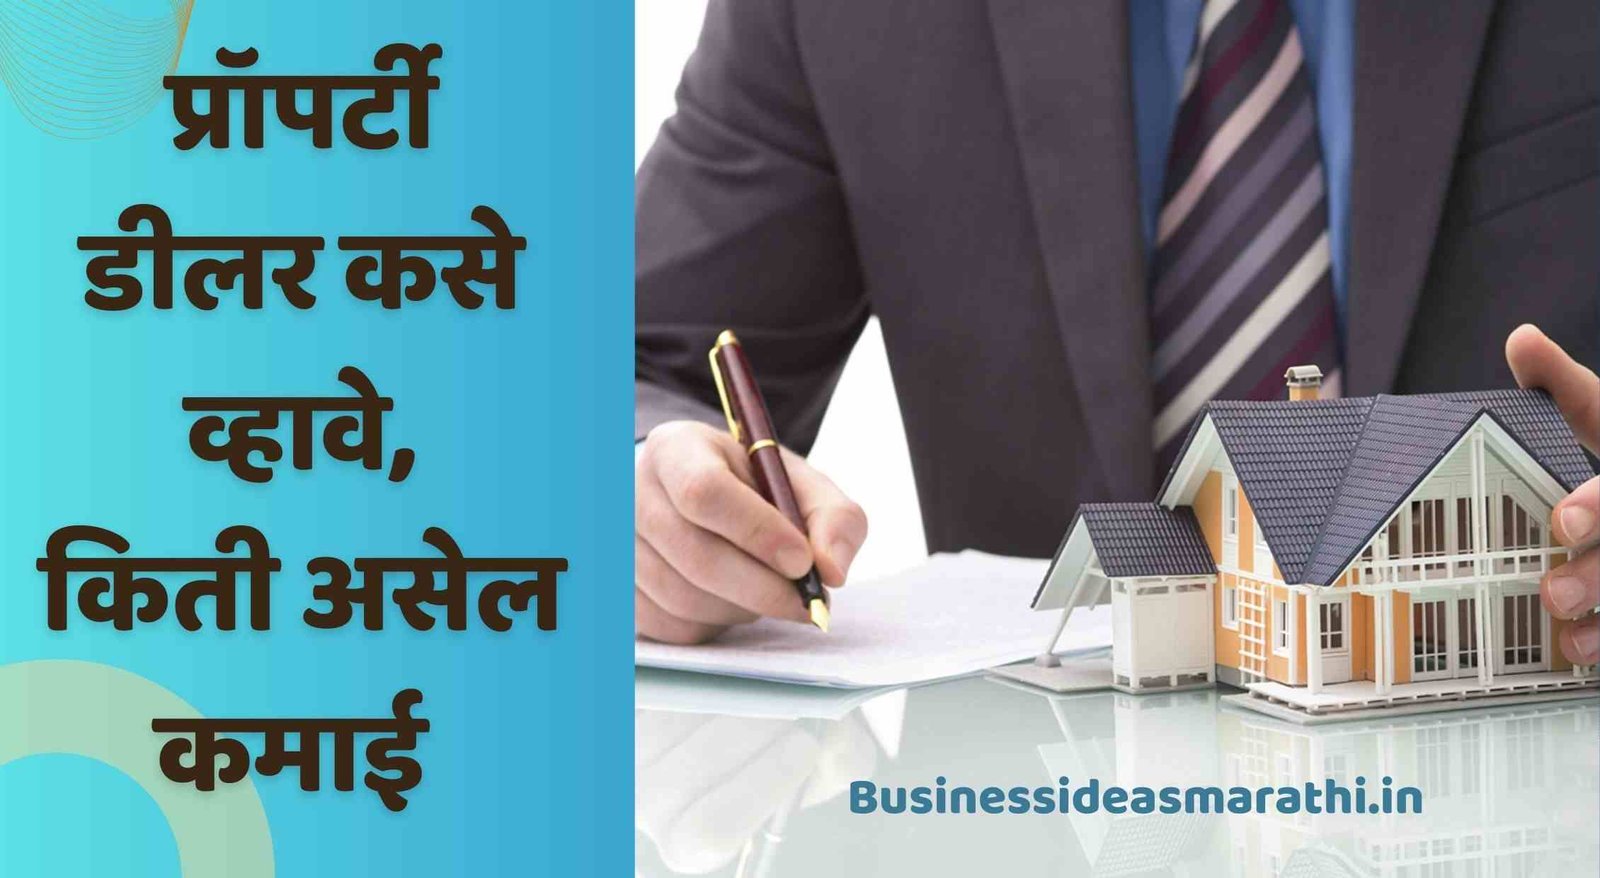 प्रॉपर्टी डीलर कसे व्हावे | Property Dealer Business Information In Marathi